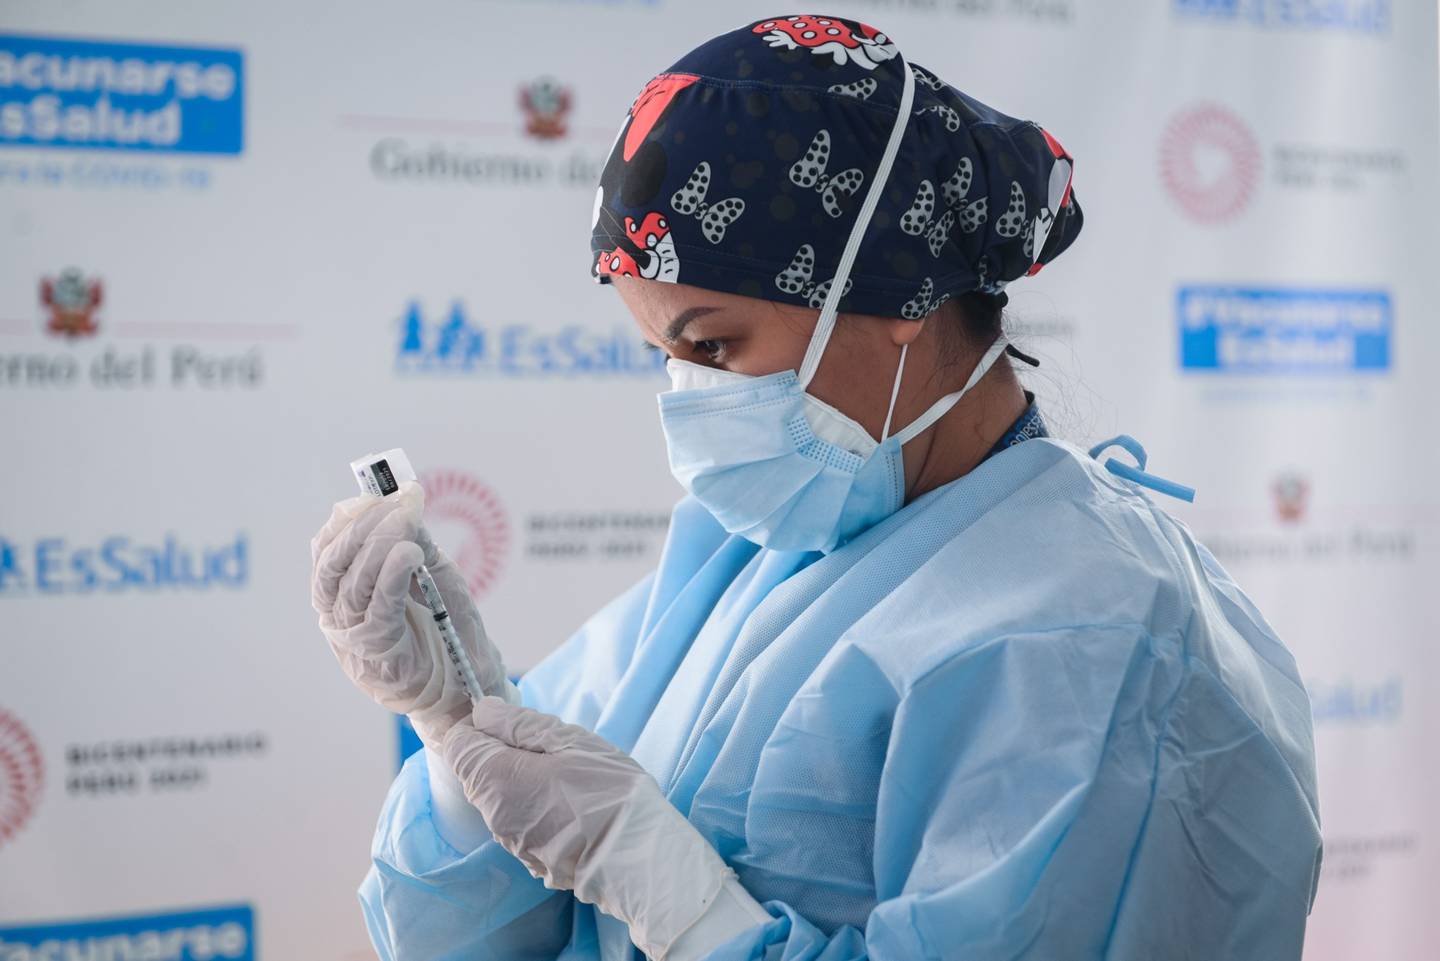 Una trabajadora de salud prepara una dosis de la vacuna Pfizer-BioNTech Covid-19 en una clínica en Lima, Perú, el jueves 11 de marzo de 2021.dfd